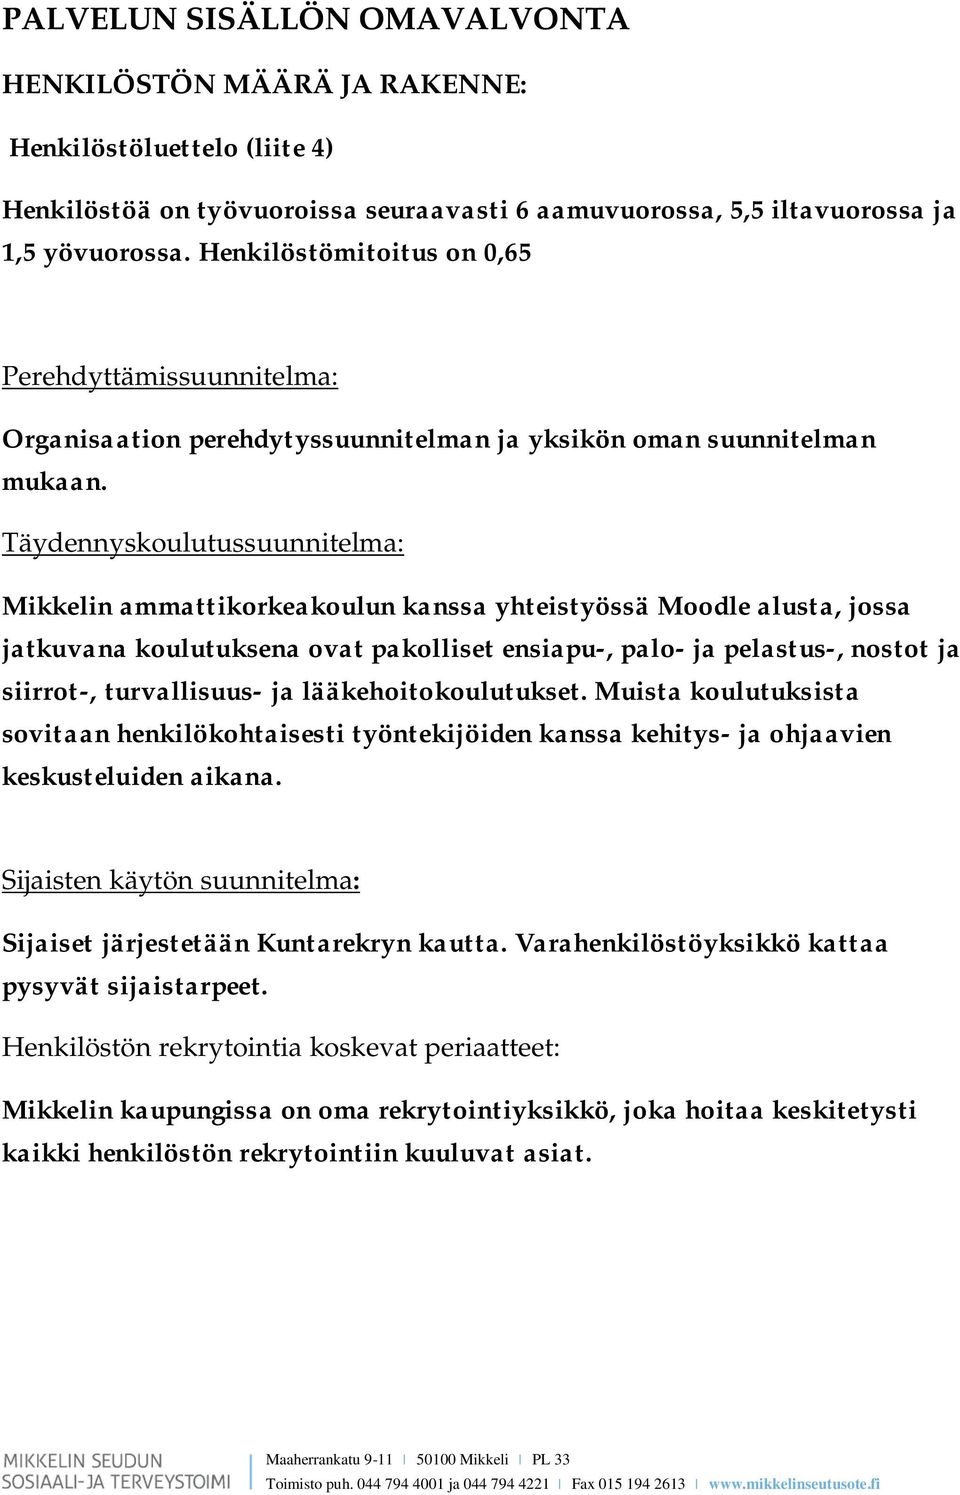 Täydennyskoulutussuunnitelma: Mikkelin ammattikorkeakoulun kanssa yhteistyössä Moodle alusta, jossa jatkuvana koulutuksena ovat pakolliset ensiapu-, palo- ja pelastus-, nostot ja siirrot-,